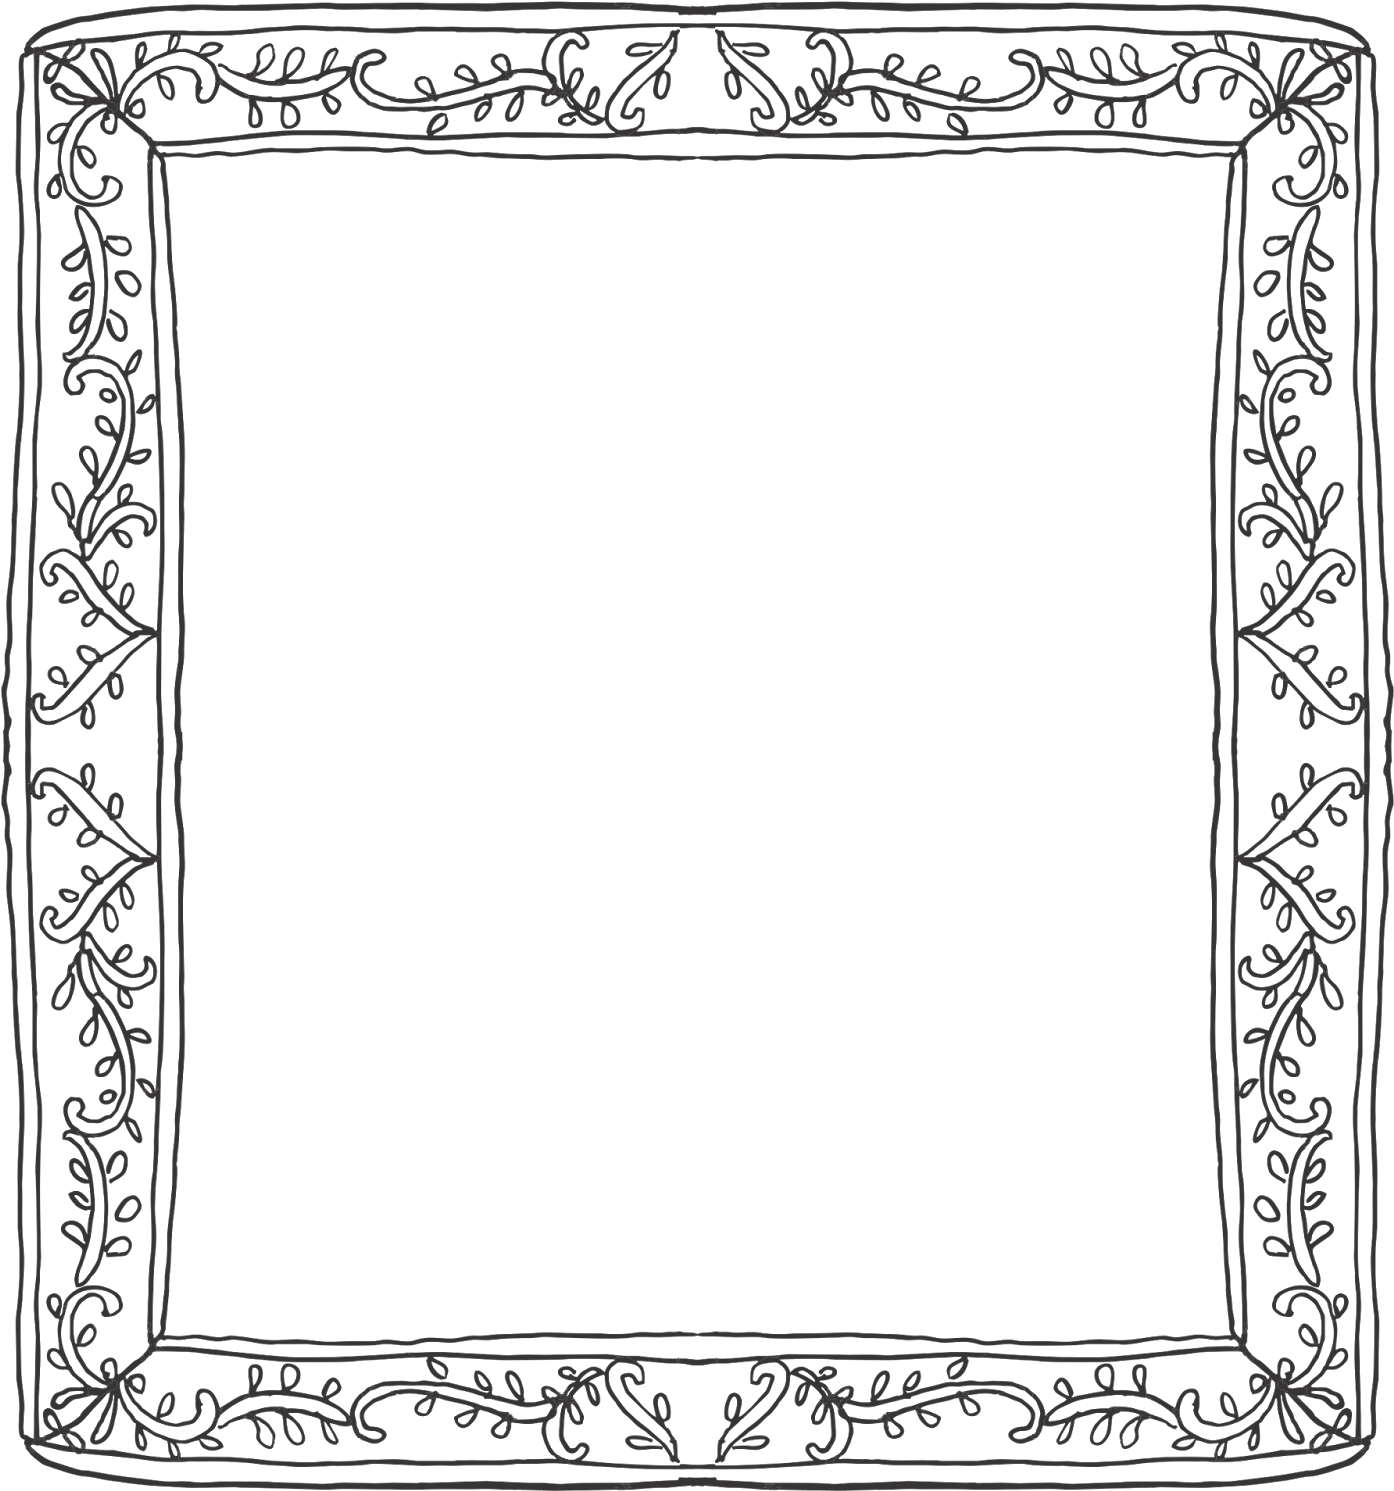 Vine Frame Border - Cadre Decoratif - Free Transparent PNG Download ...